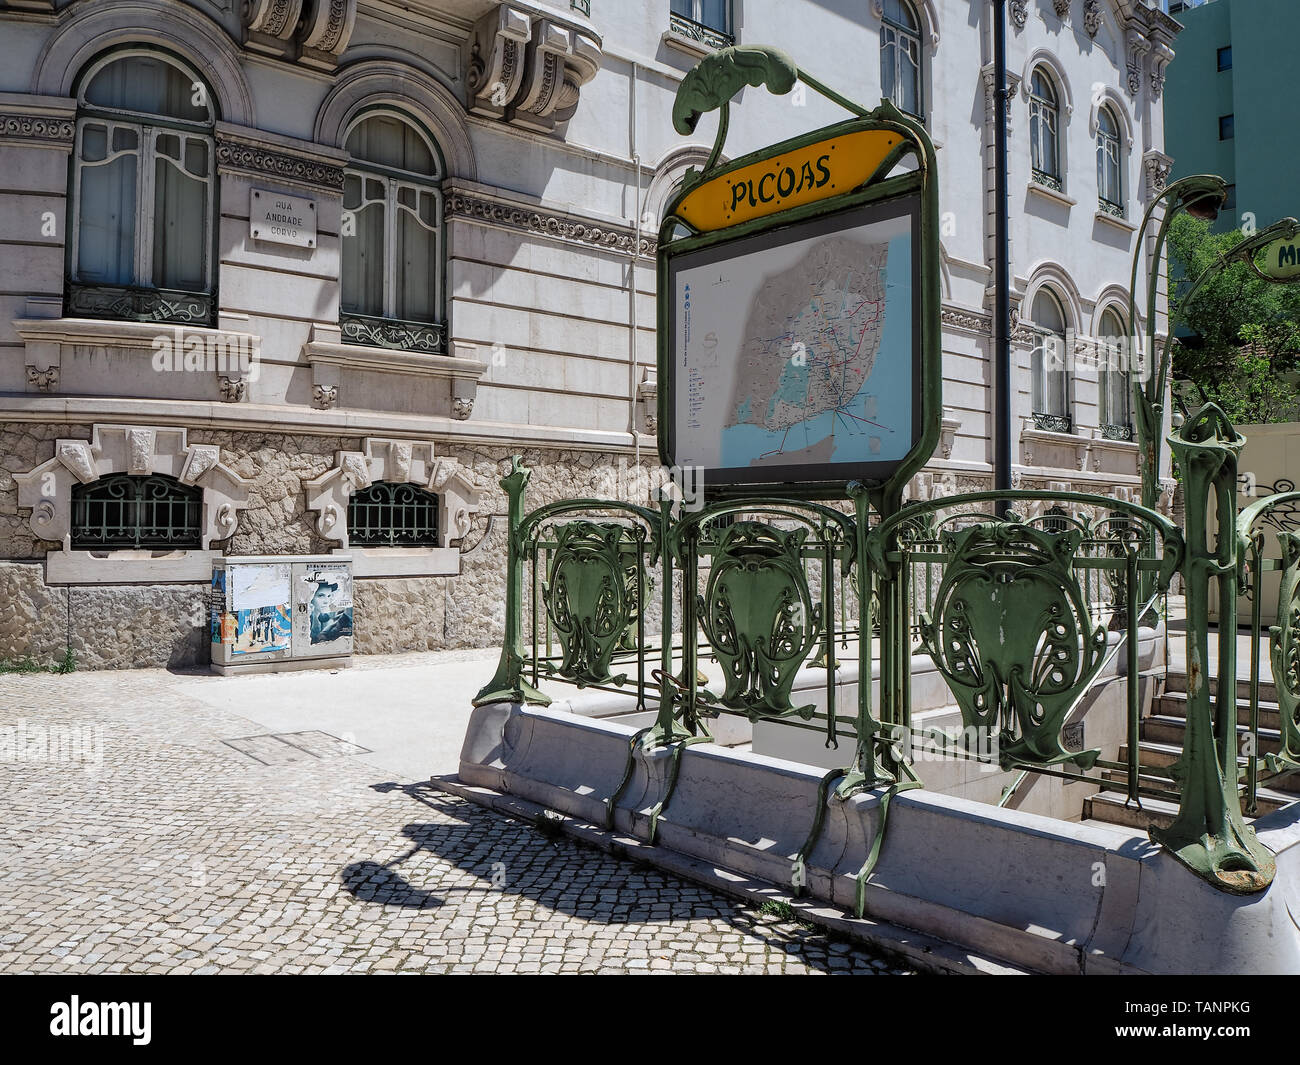 Lissabon, Portugal - 11. Mai 2019: Iconic Eingang zur U-Bahn-Station Picoas in Lissabon durch die Pariser Metro gespendet Stockfoto